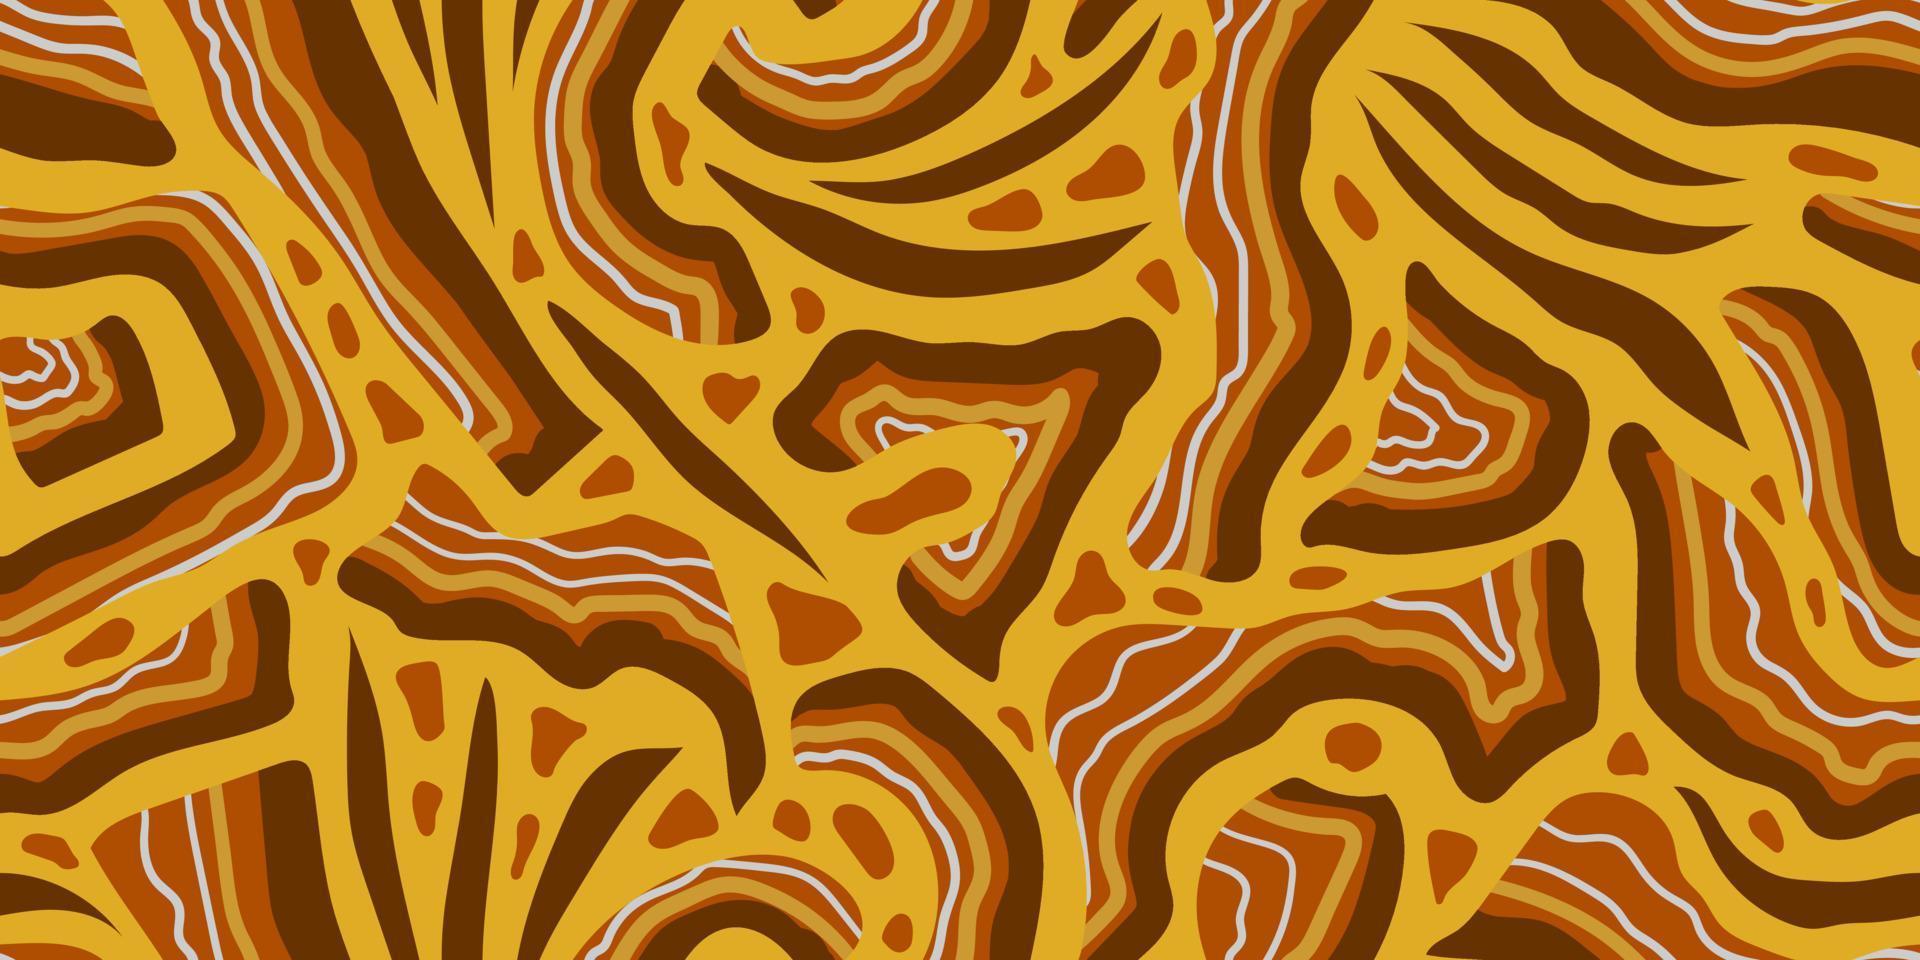 bannière jaune transparente abstract vector avec des sections de pierres brunes sans forme